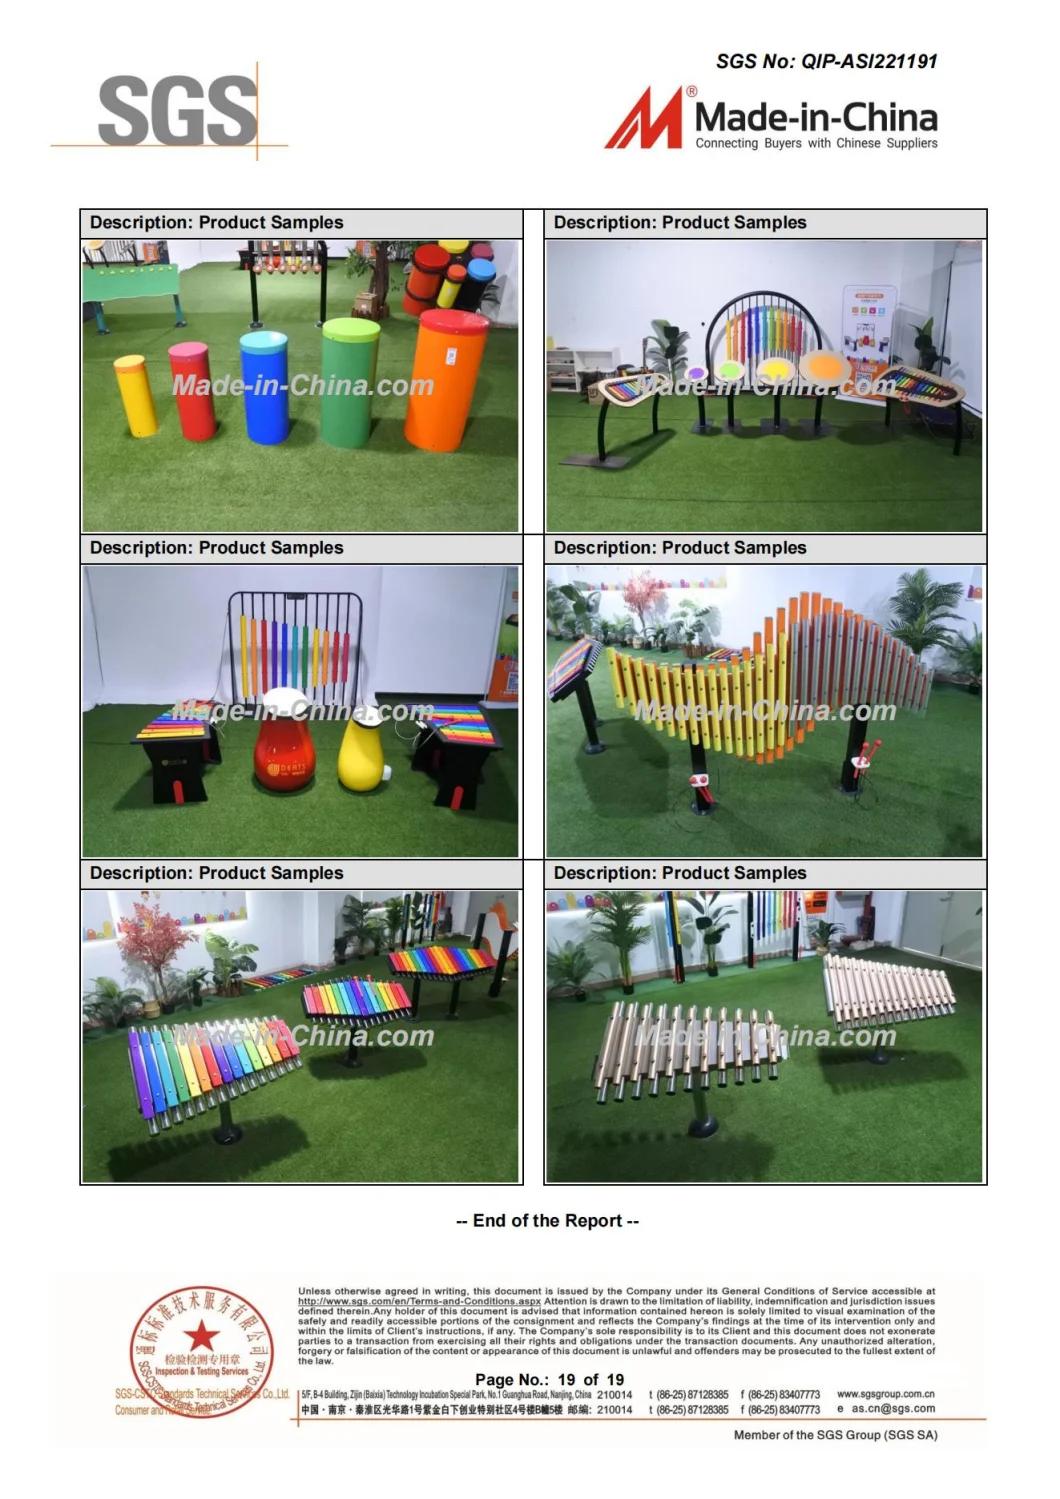 Amazing Music Series Funny Metal Outdoor&Indoor School & Kindgergarten Playground Equipment Musical Instruments for Kids/Children